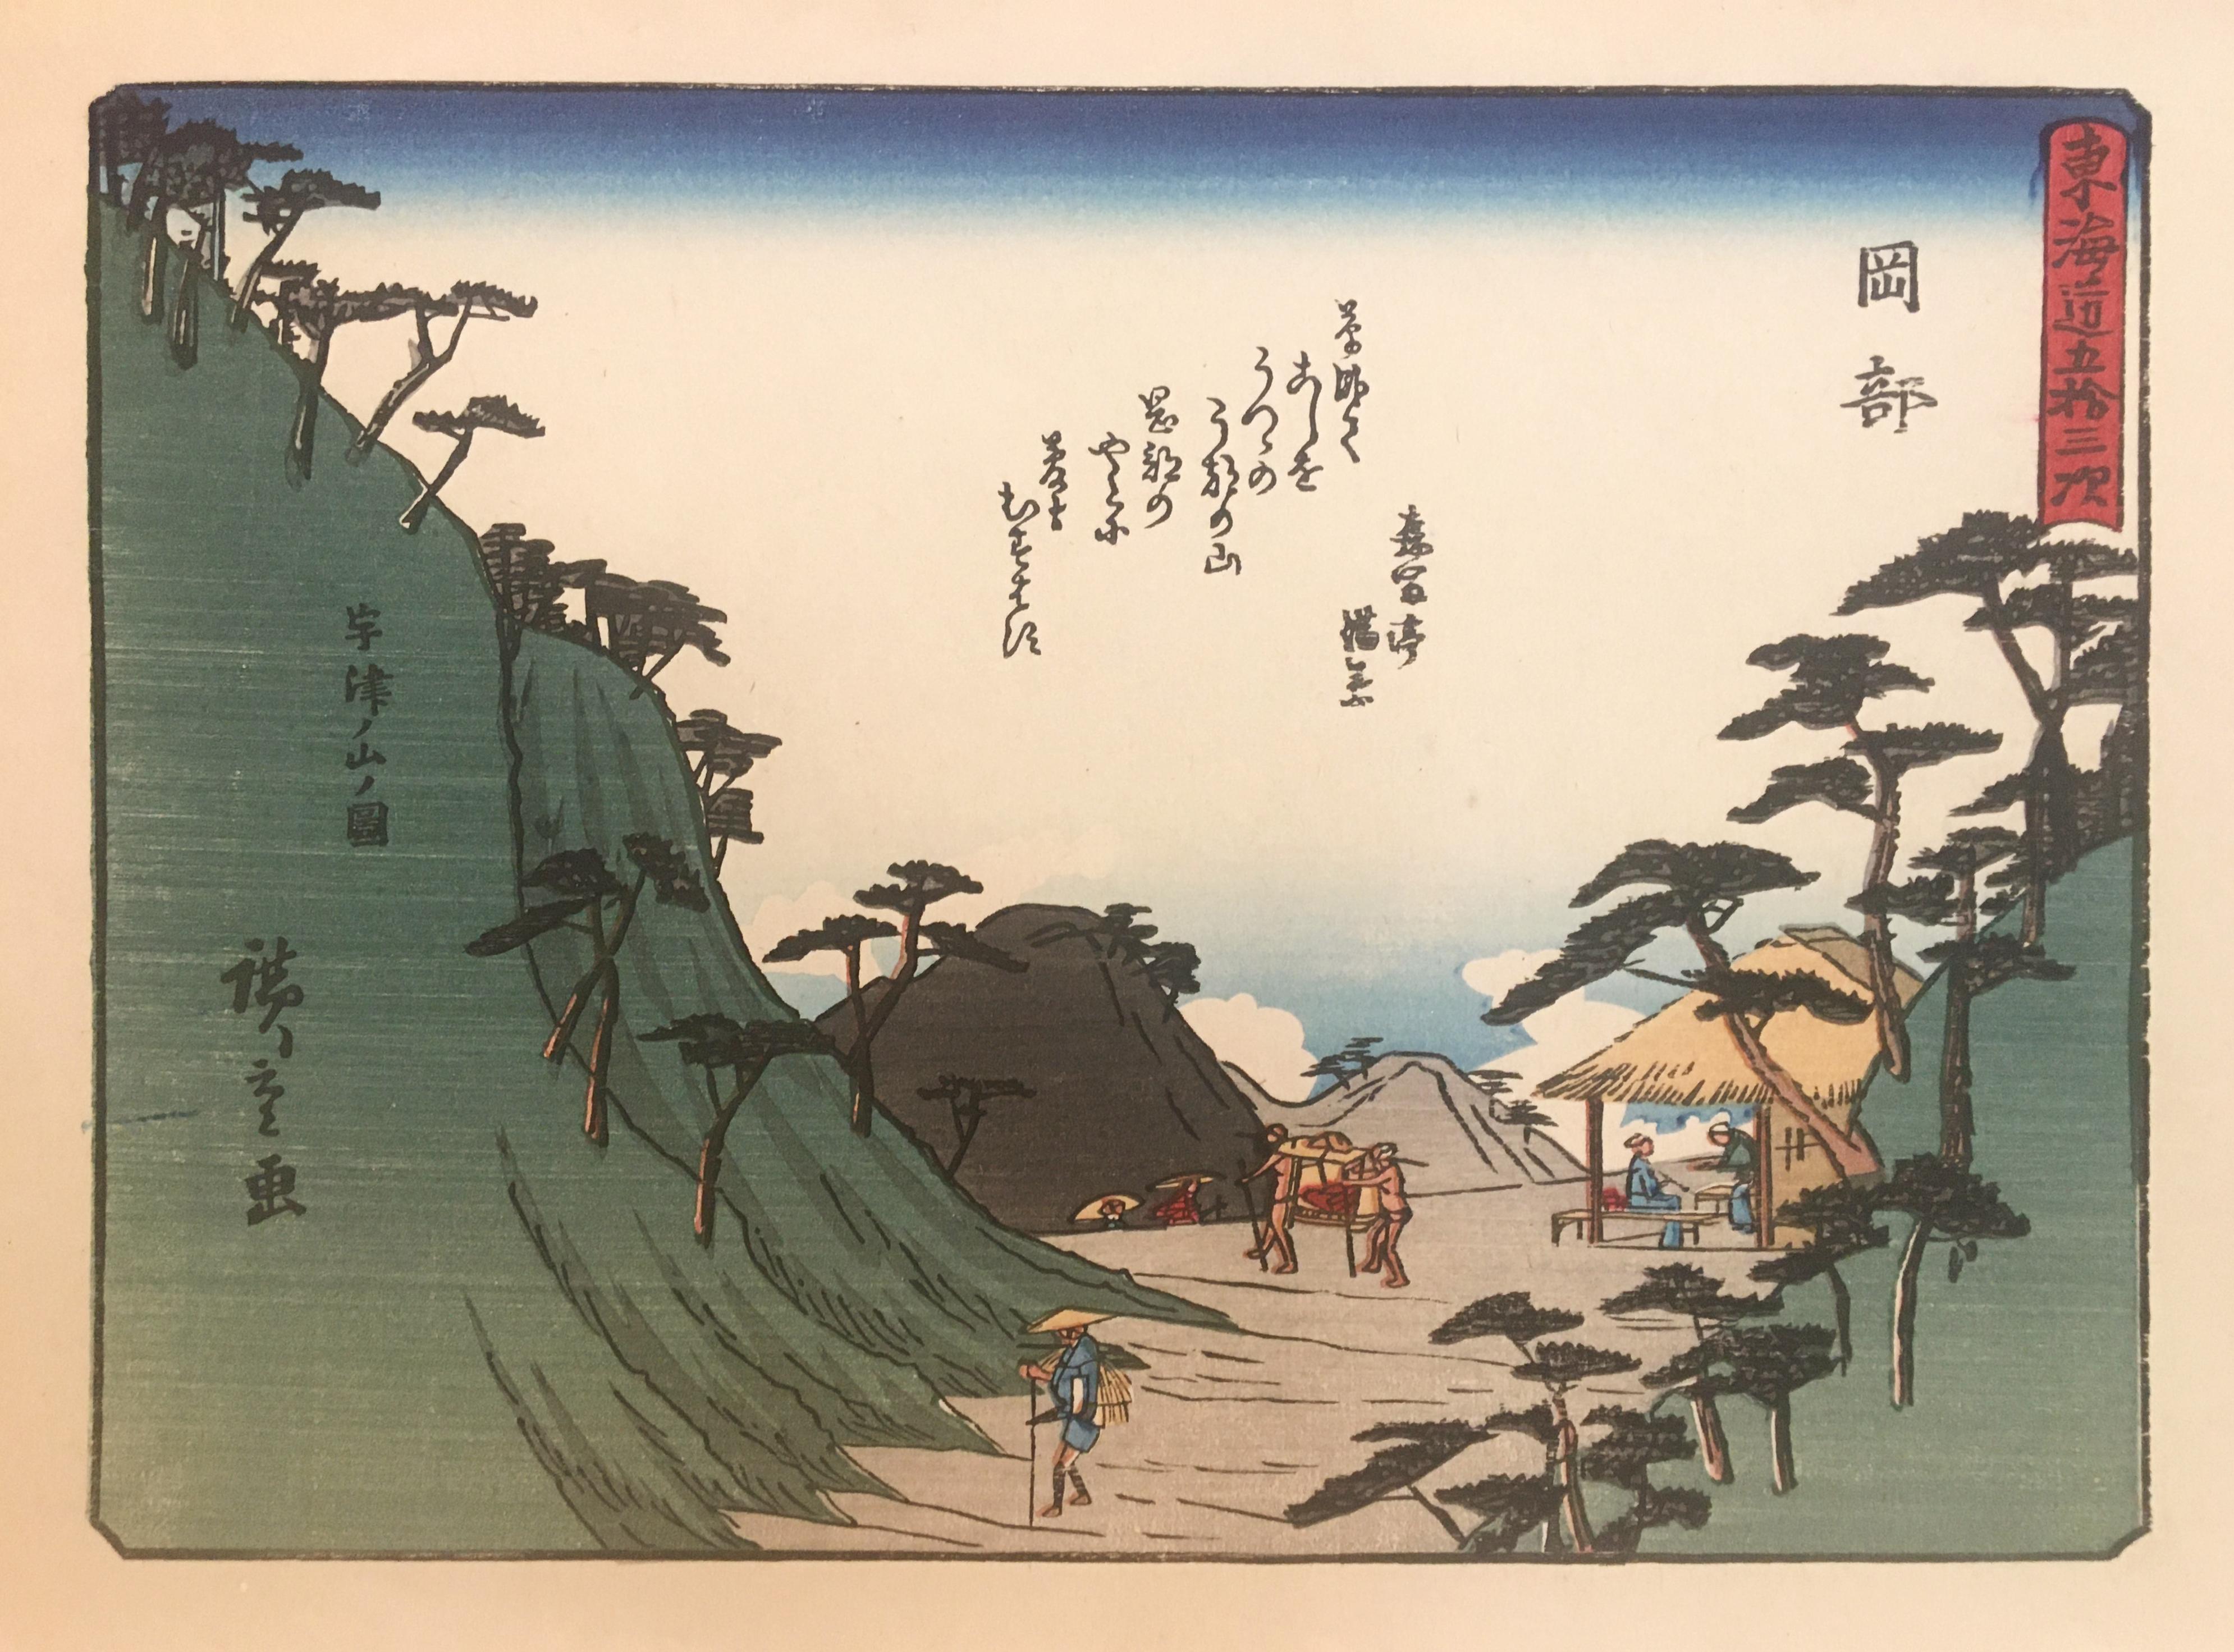 Utagawa Hiroshige (Ando Hiroshige) Landscape Print - 'Mountain Pass at Okabe', After Utagawa Hiroshige, Ukiyo-E Woodblock, Tokaido